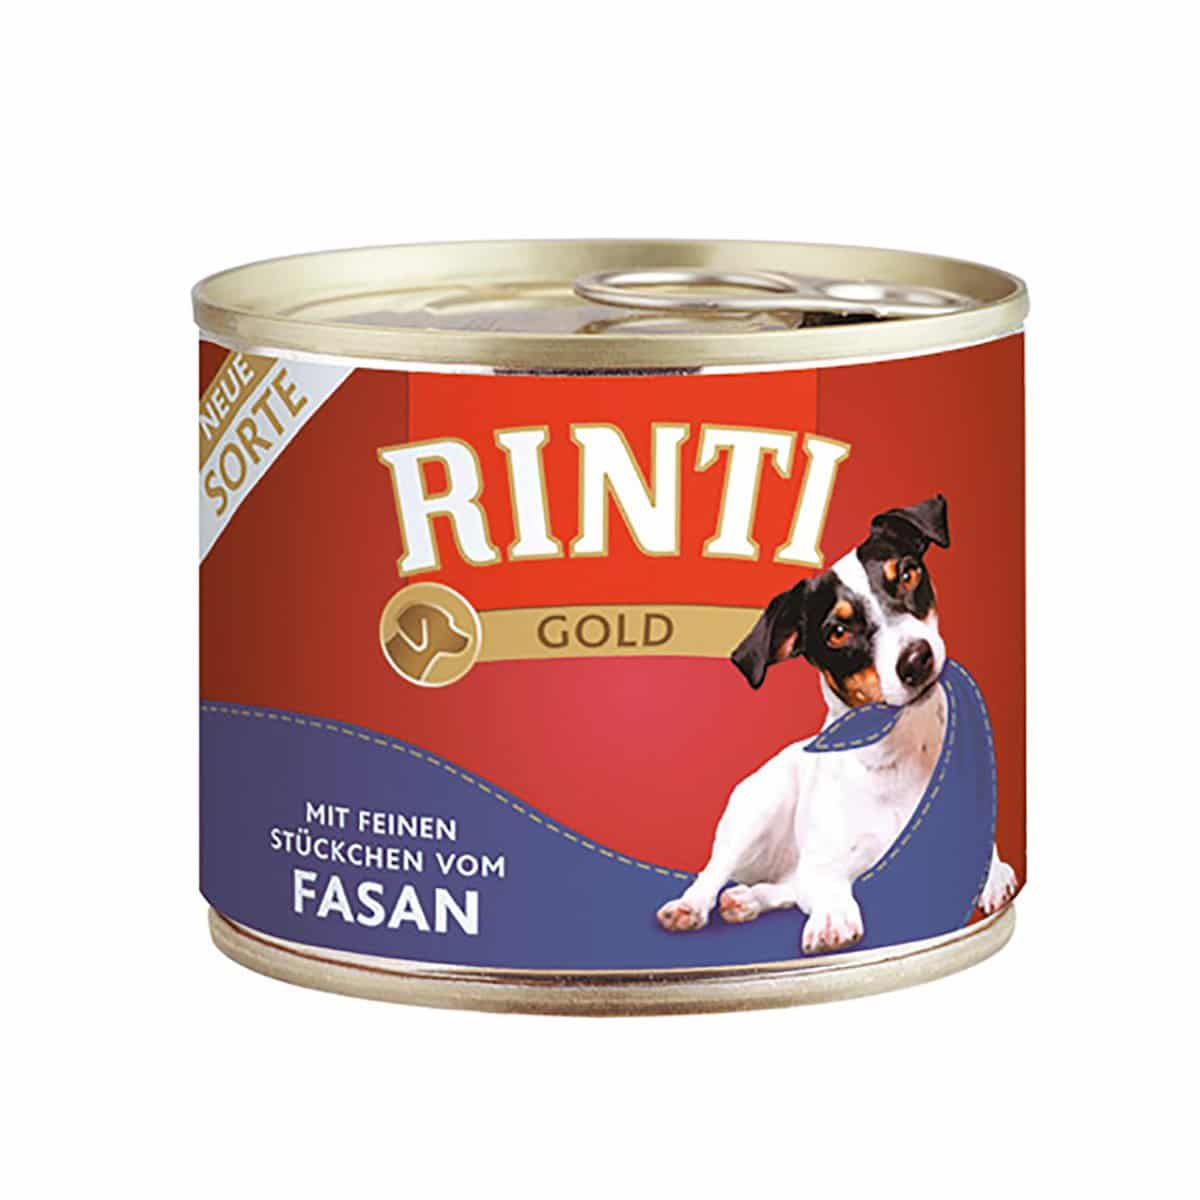 Rinti Gold feine Stückchen vom Fasan 12x185g